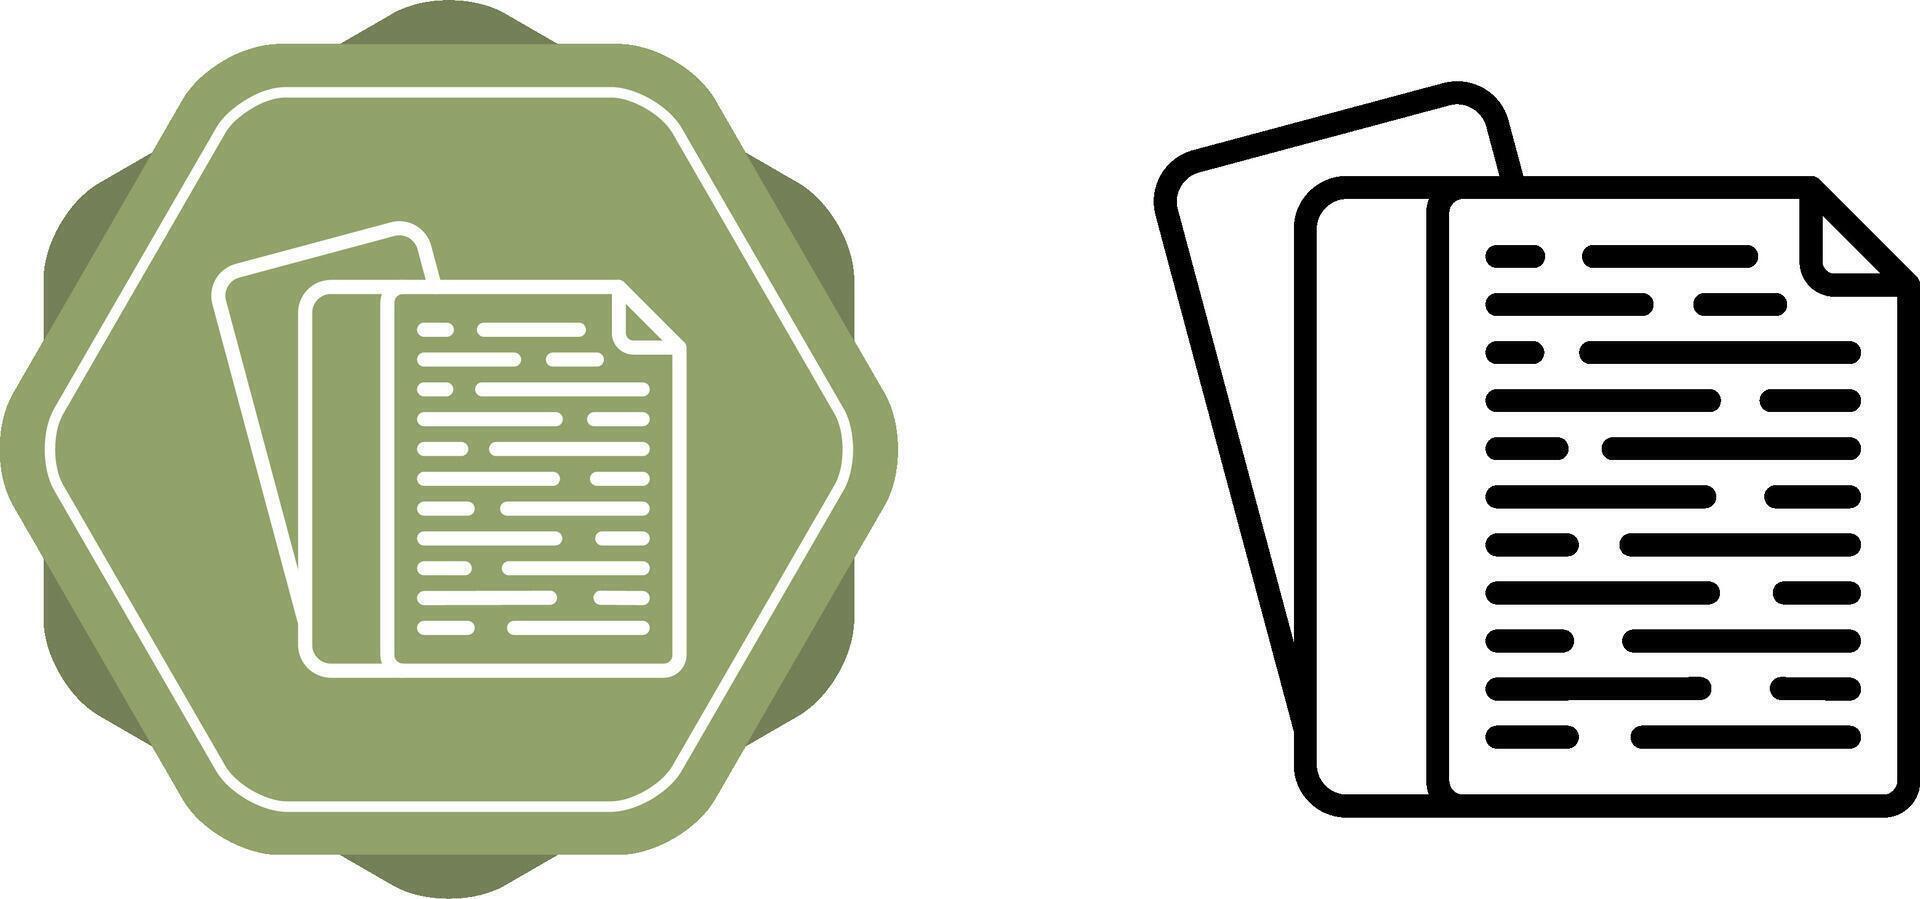 Documents Vector Icon